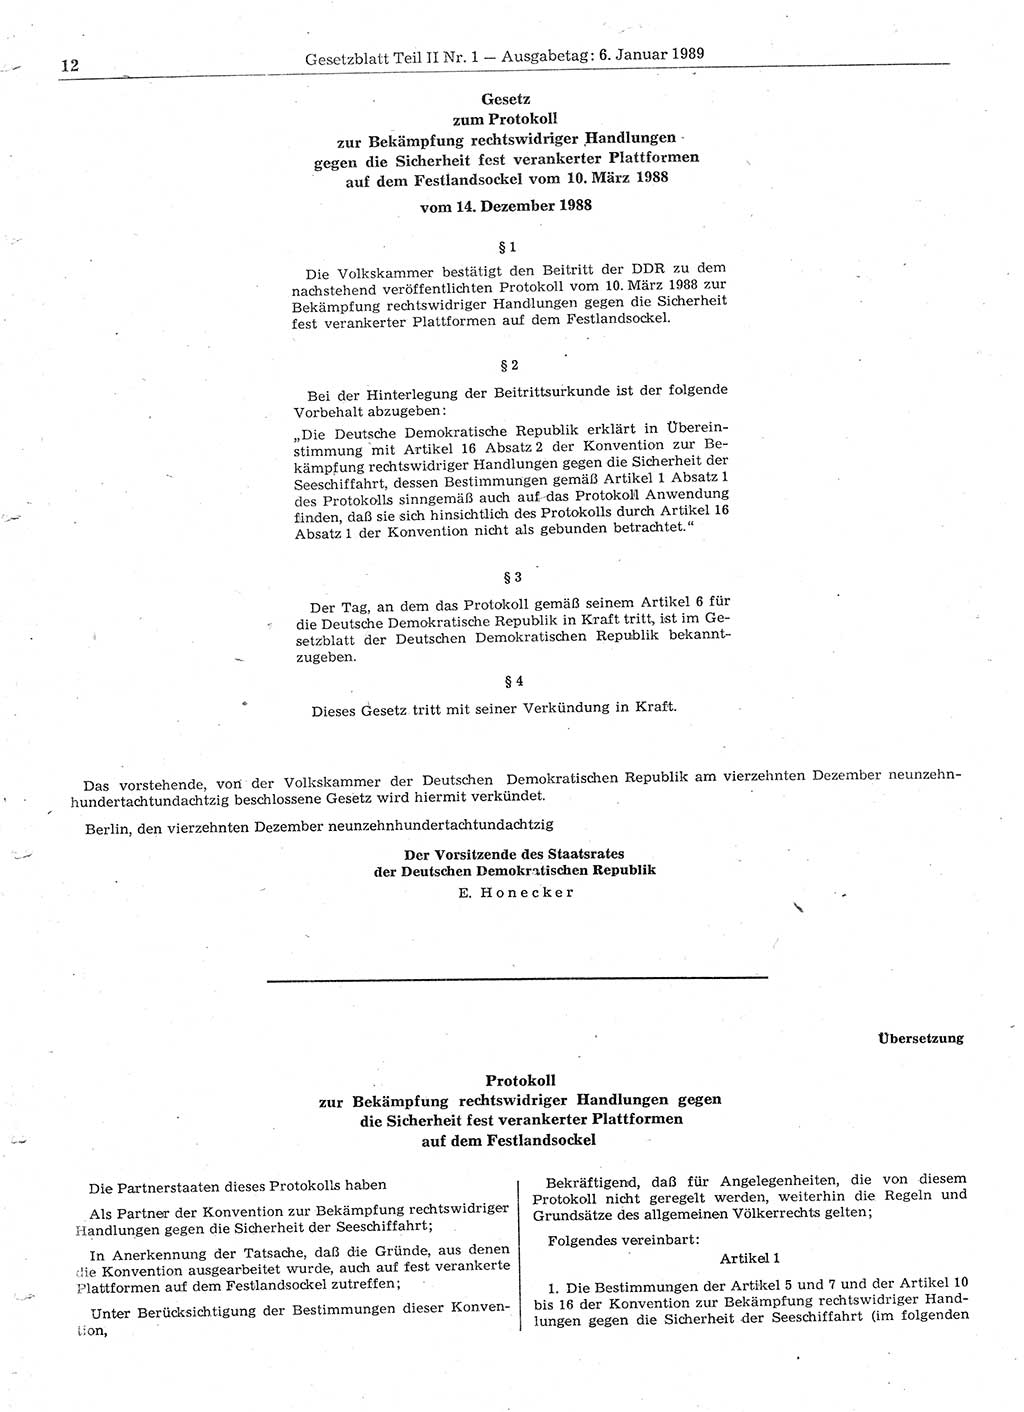 Gesetzblatt (GBl.) der Deutschen Demokratischen Republik (DDR) Teil ⅠⅠ 1989, Seite 12 (GBl. DDR ⅠⅠ 1989, S. 12)